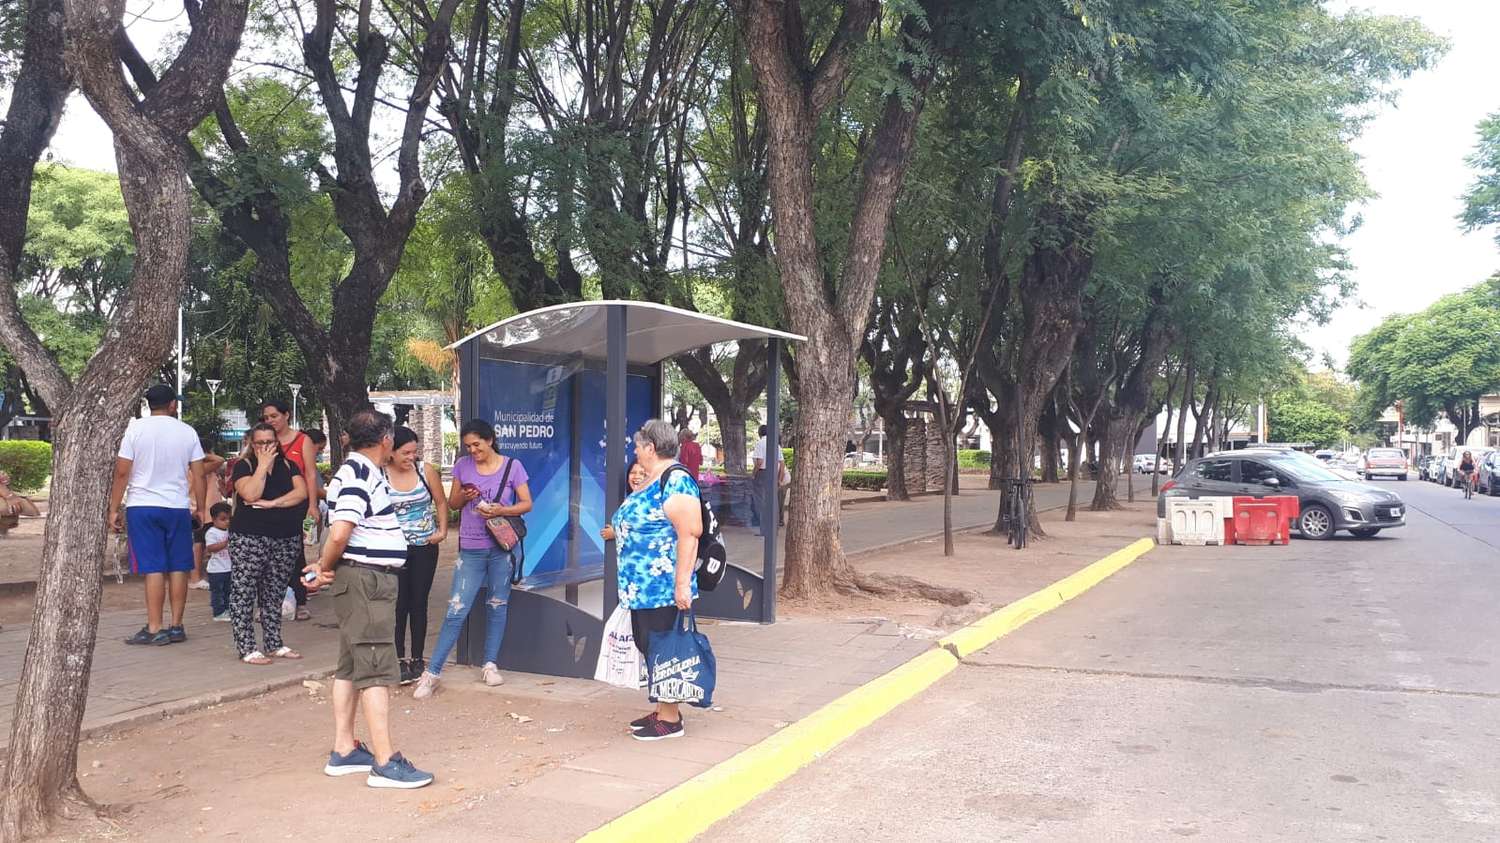 Colectivos: señalizaron la parada y hay nueva garita en Plaza Belgrano